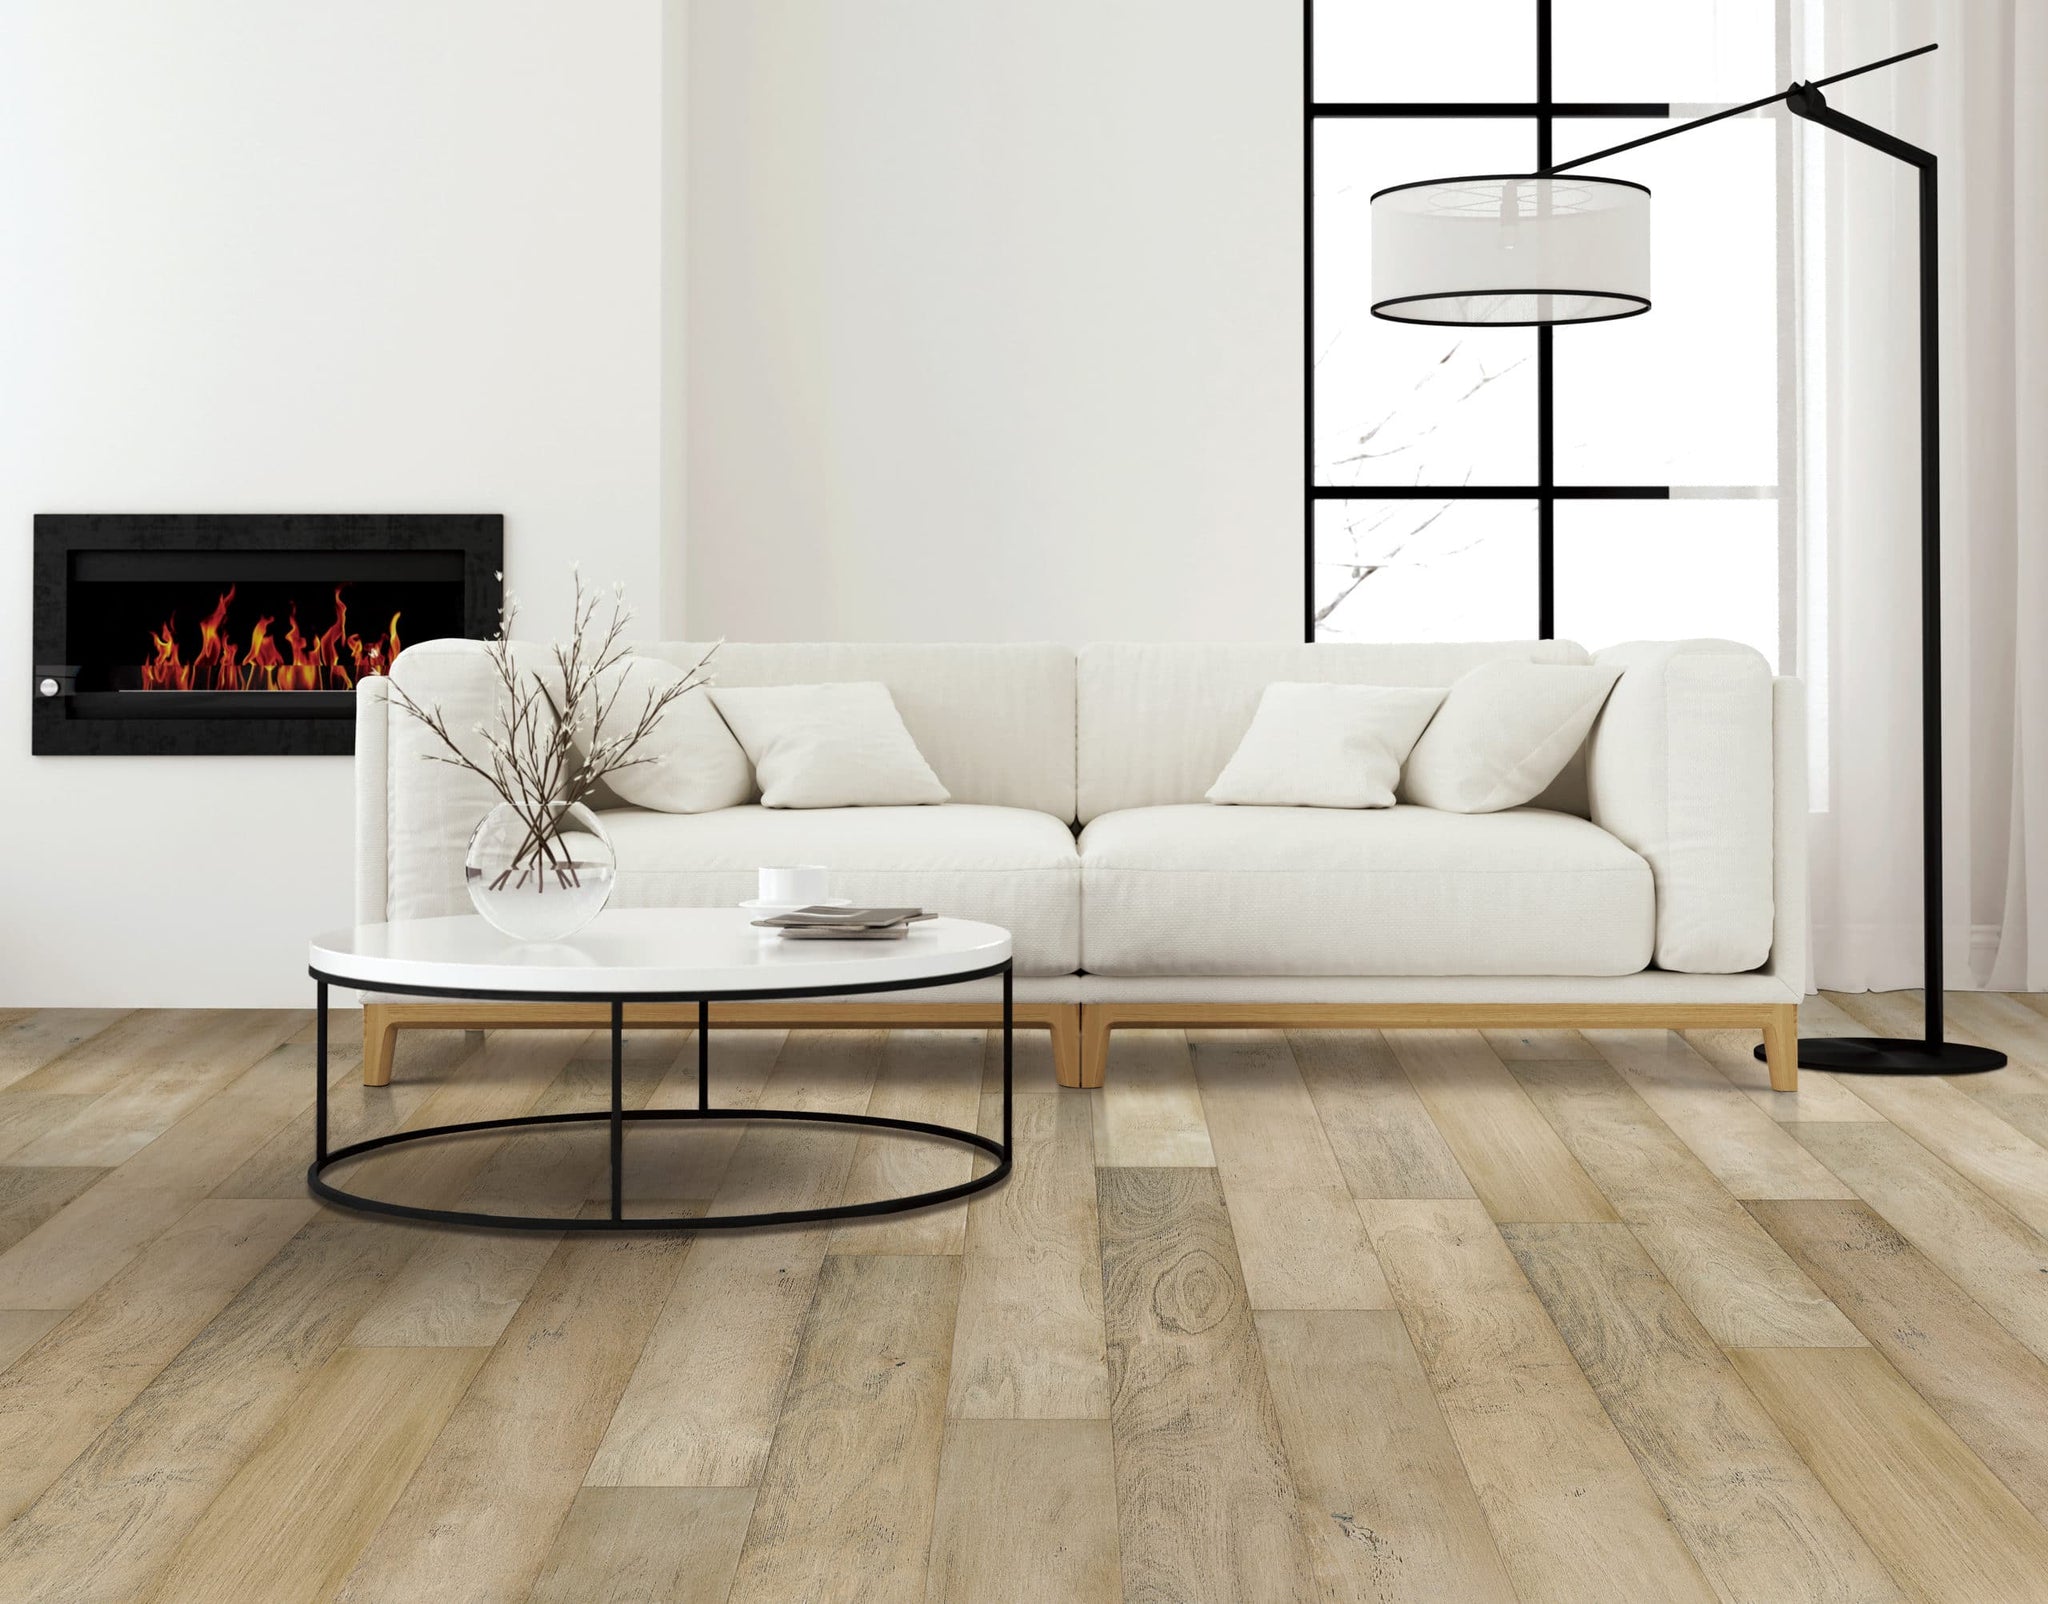 2022 Top Hardwood Flooring Trends | Wood Floor Trends 2022